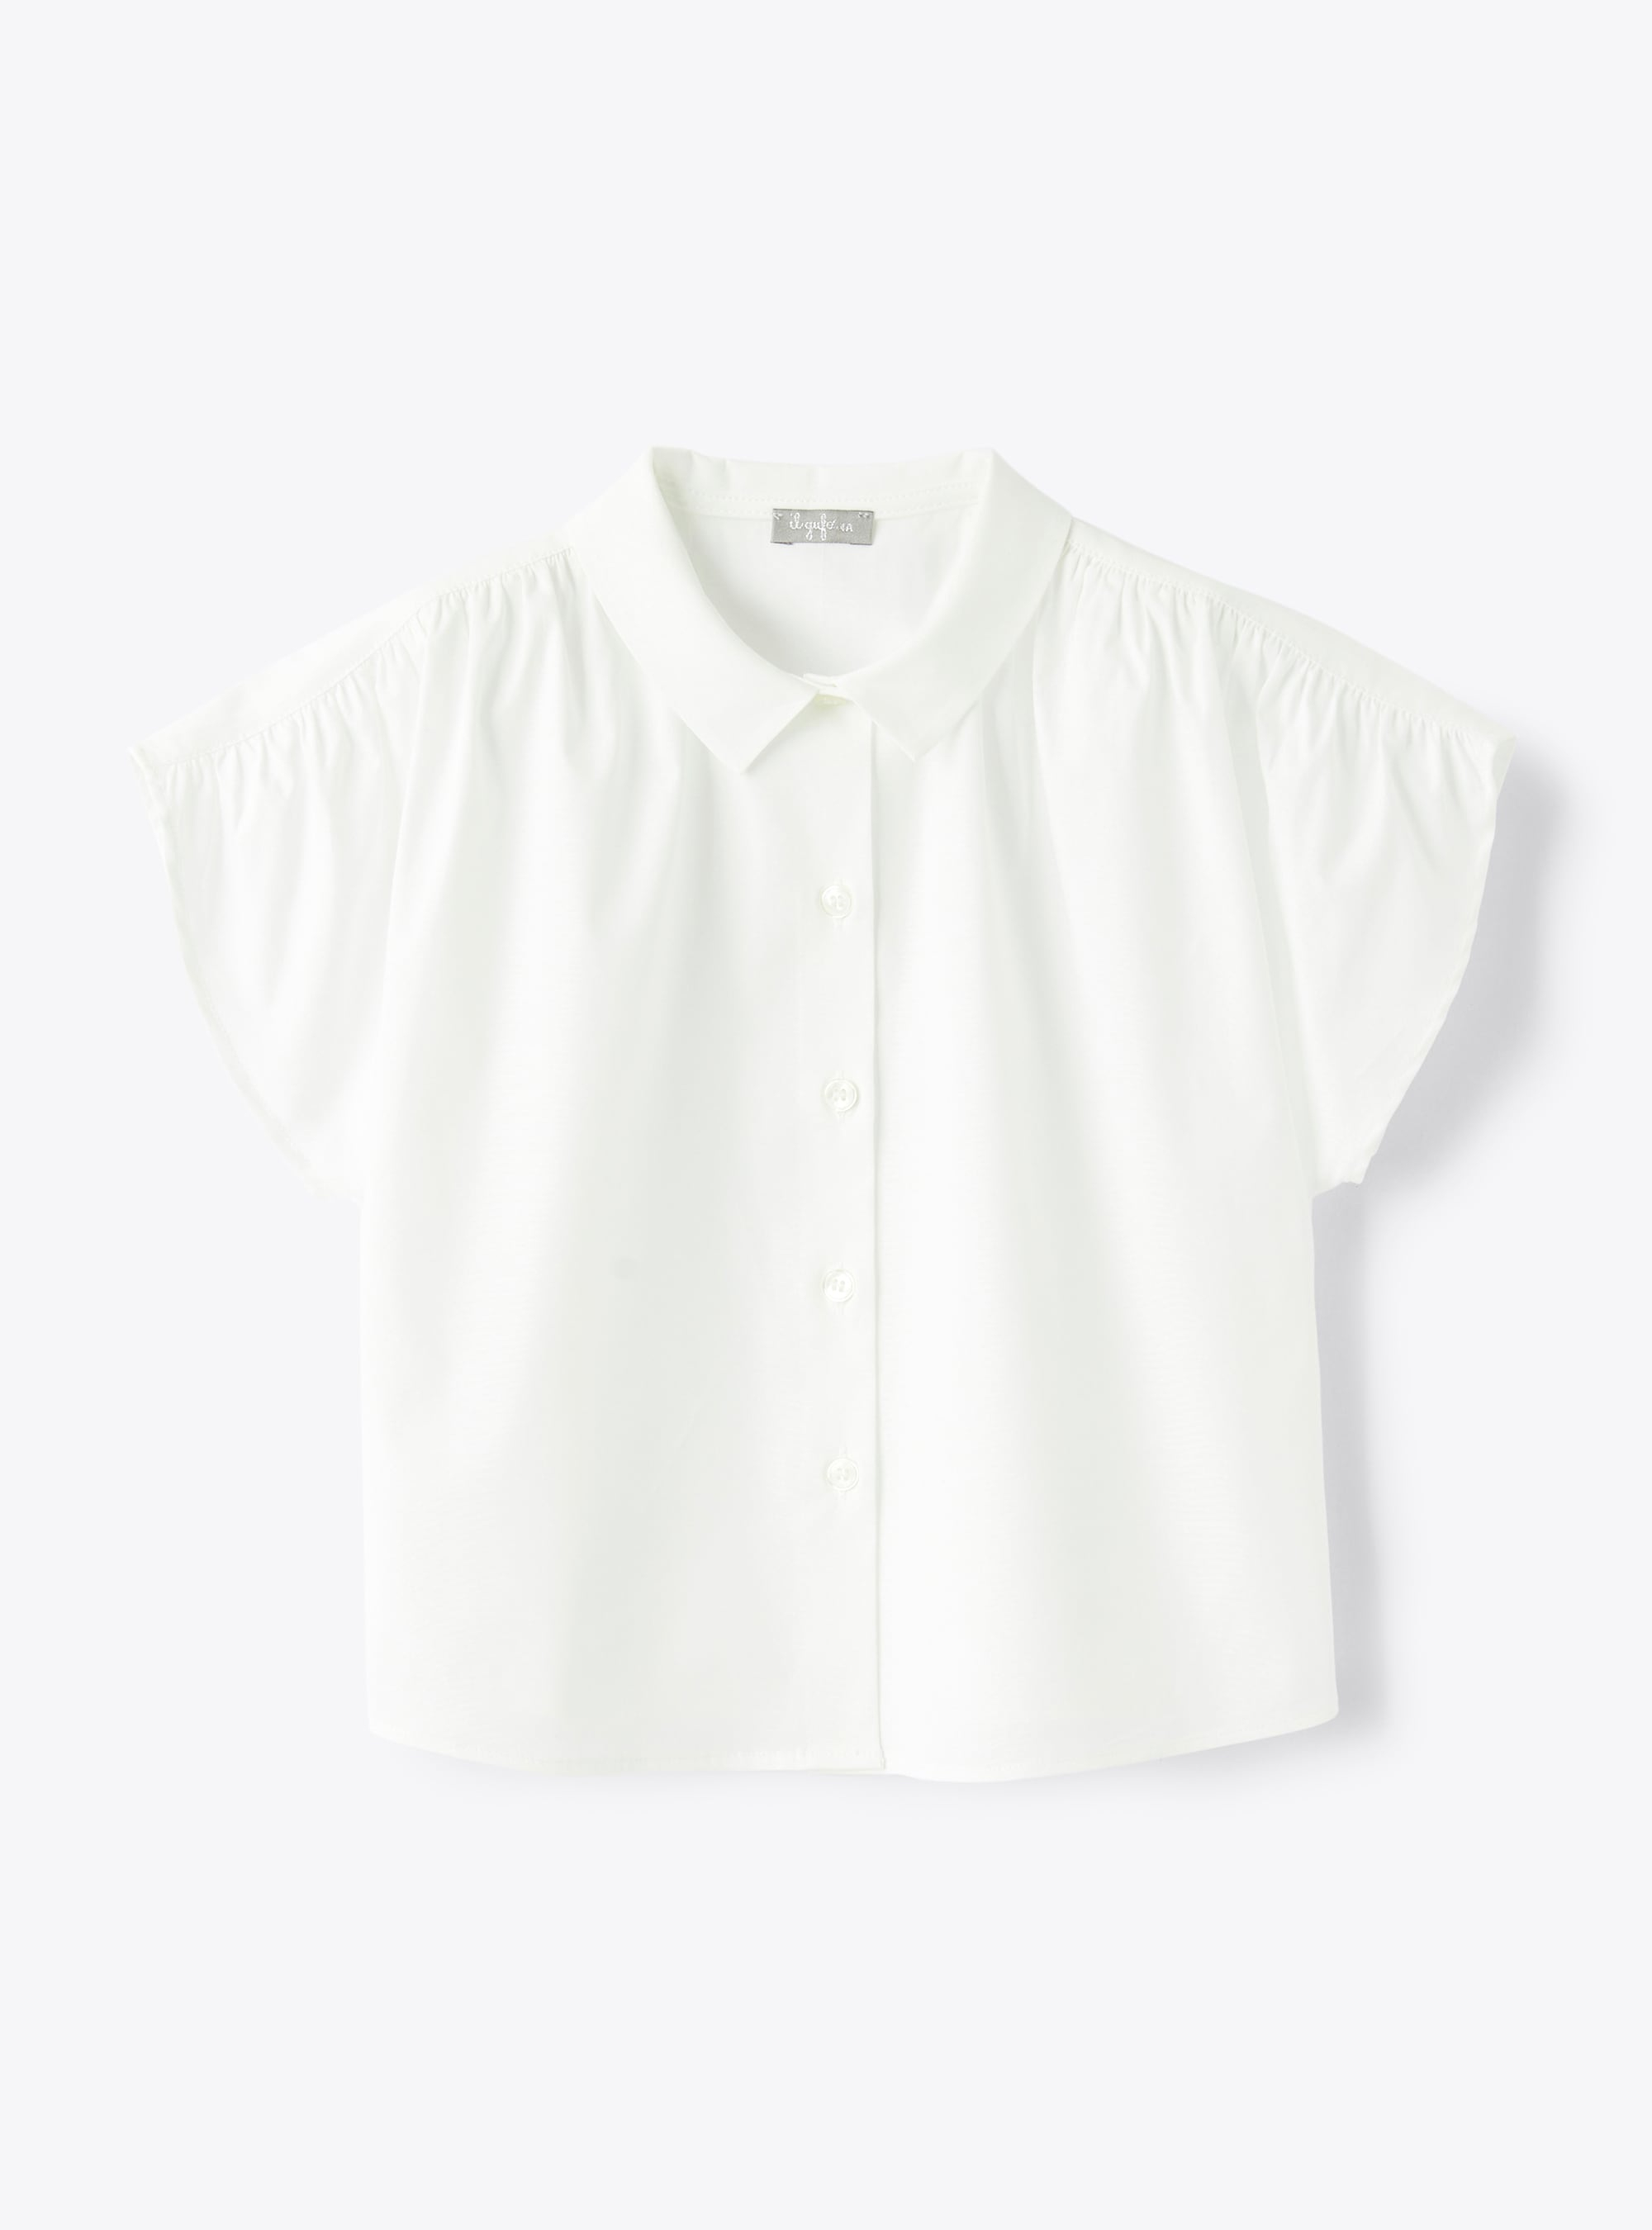 Bluse aus weißem Stretch-Popeline - Hemden - Il Gufo